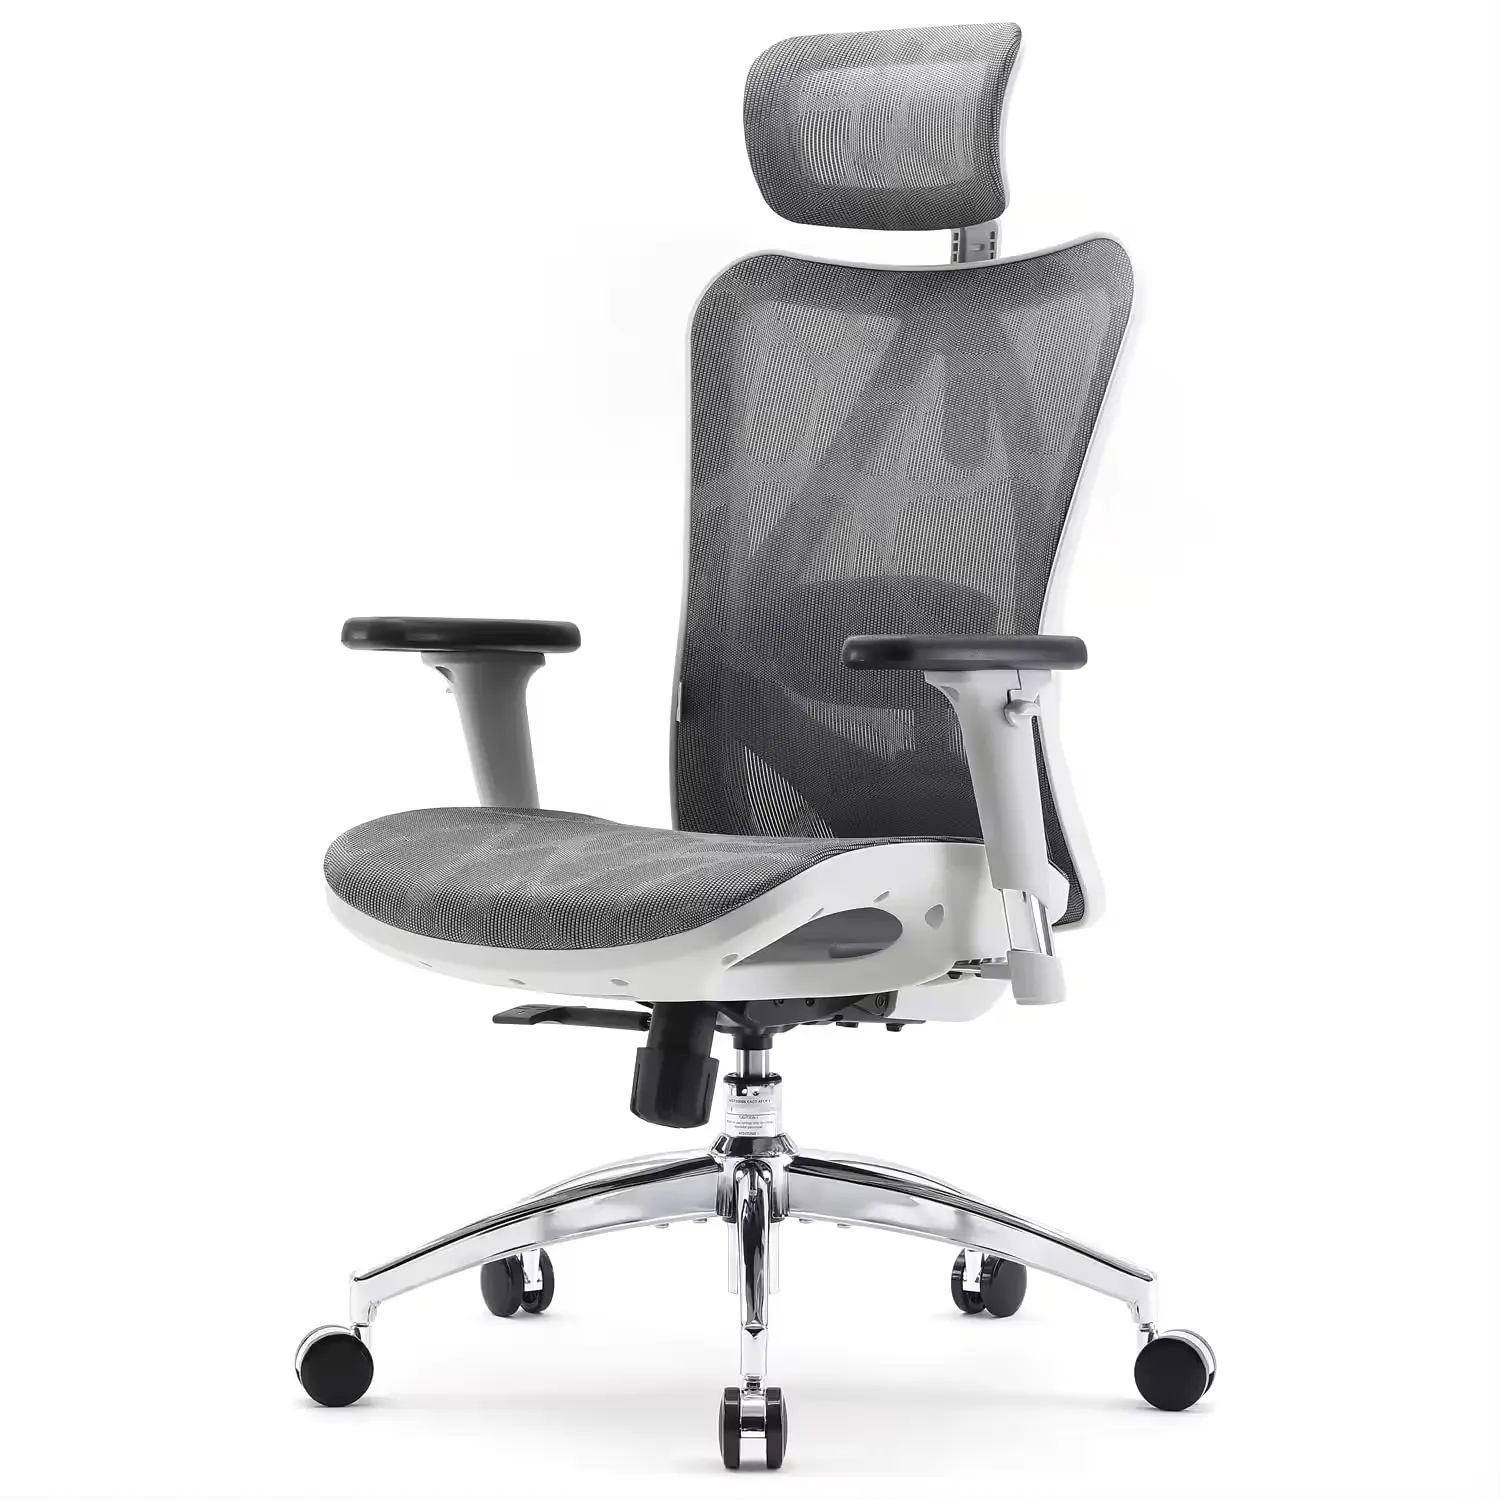 Sedia ad alta funzione con doppio bracciolo regolabile supporto lombare e sedia ergonomica per Computer da ufficio